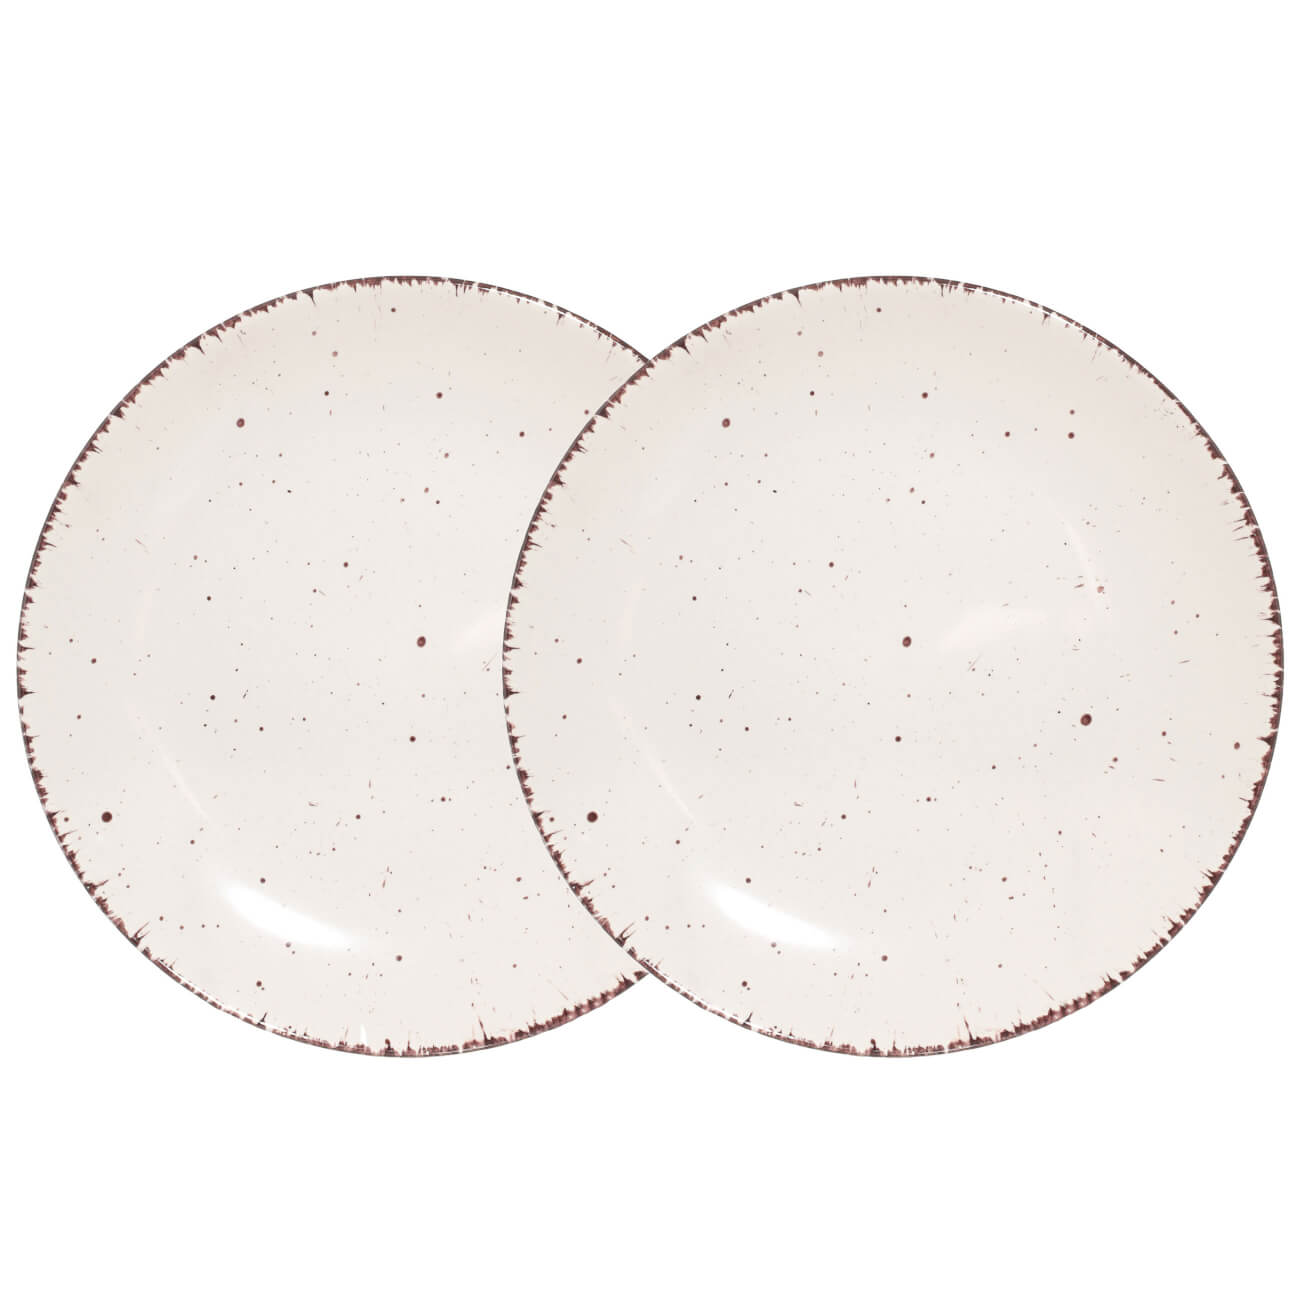 Тарелка закусочная, 21 см, 2 шт, керамика, бежевая, в крапинку, Speckled тарелка закусочная imari розы парижа 21 см